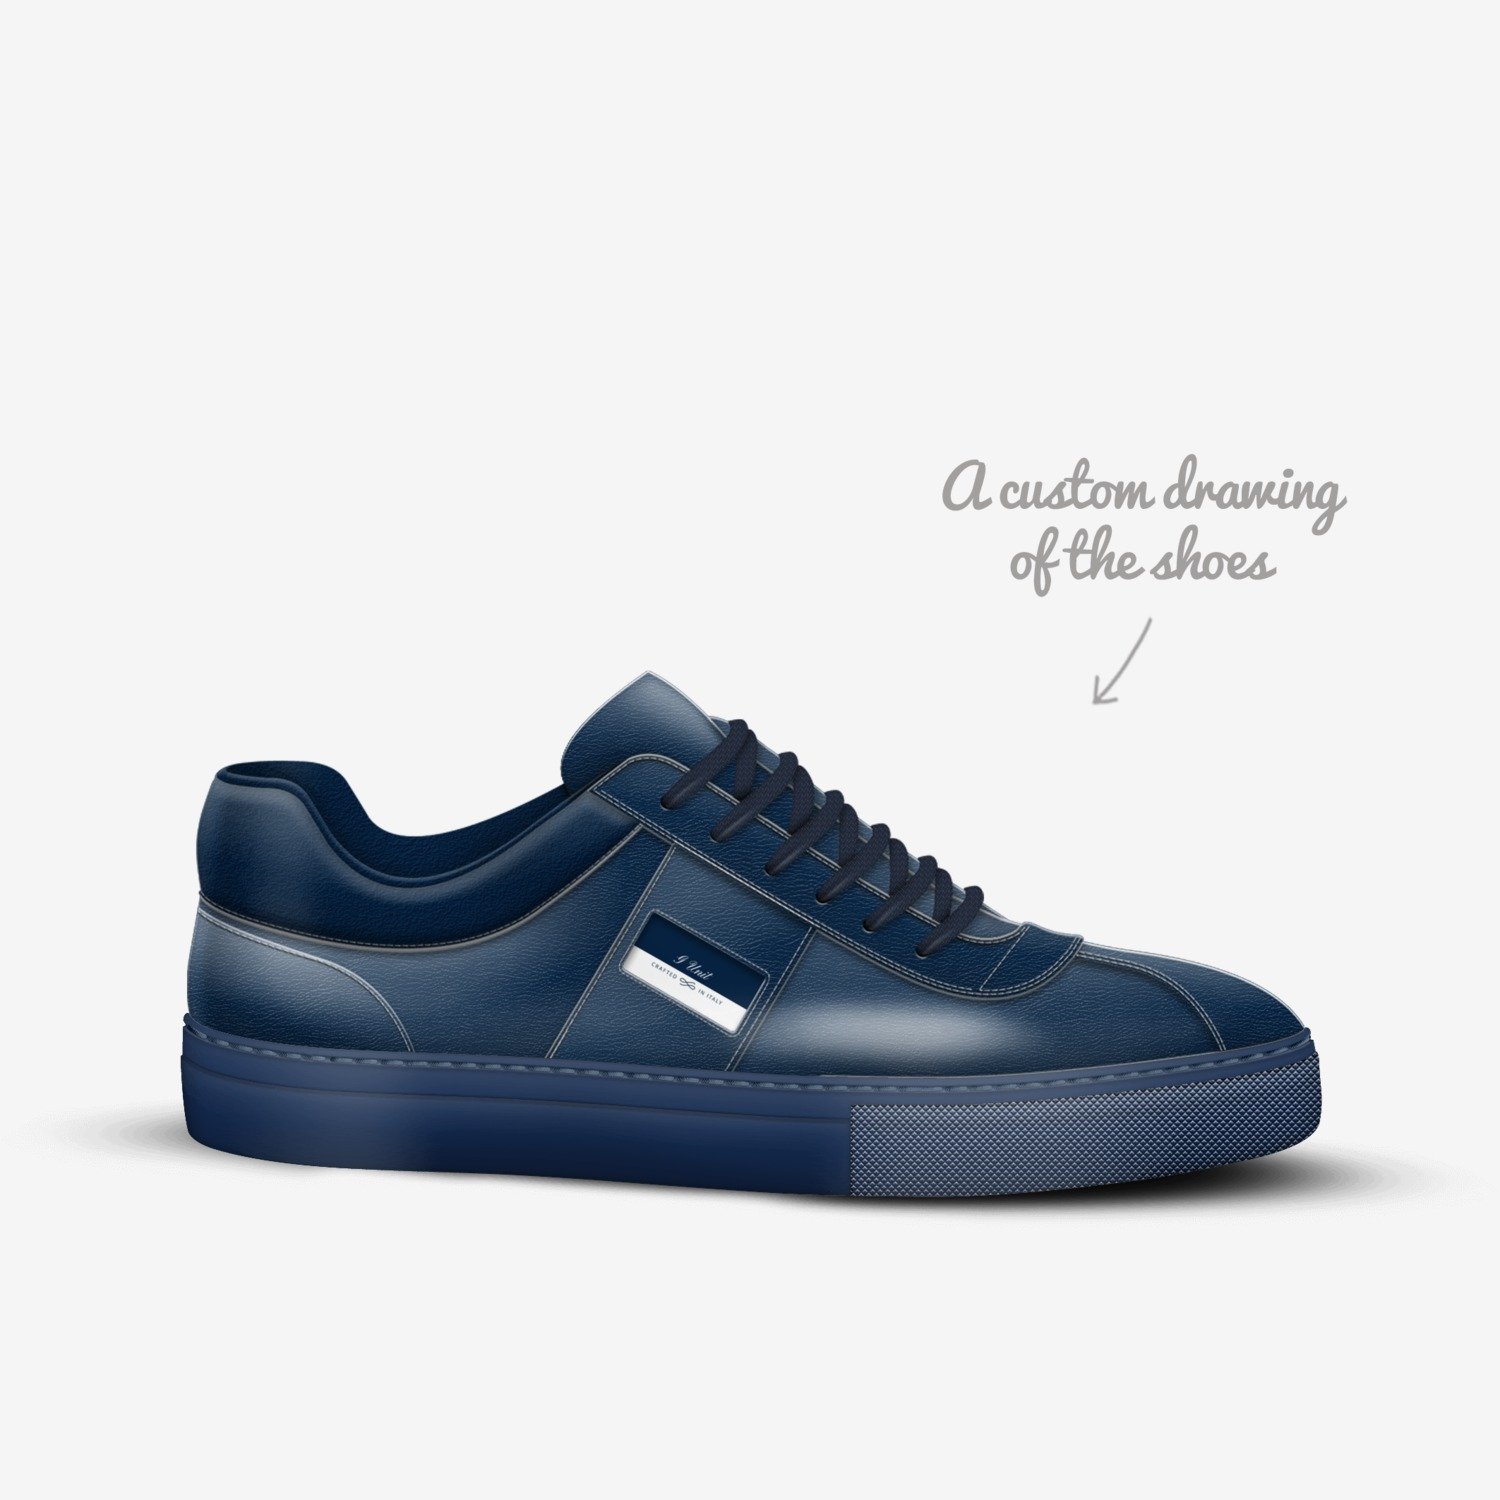 at fortsætte sur lunken G Unit Sneakers | A Custom Shoe concept by Gabriel Urena